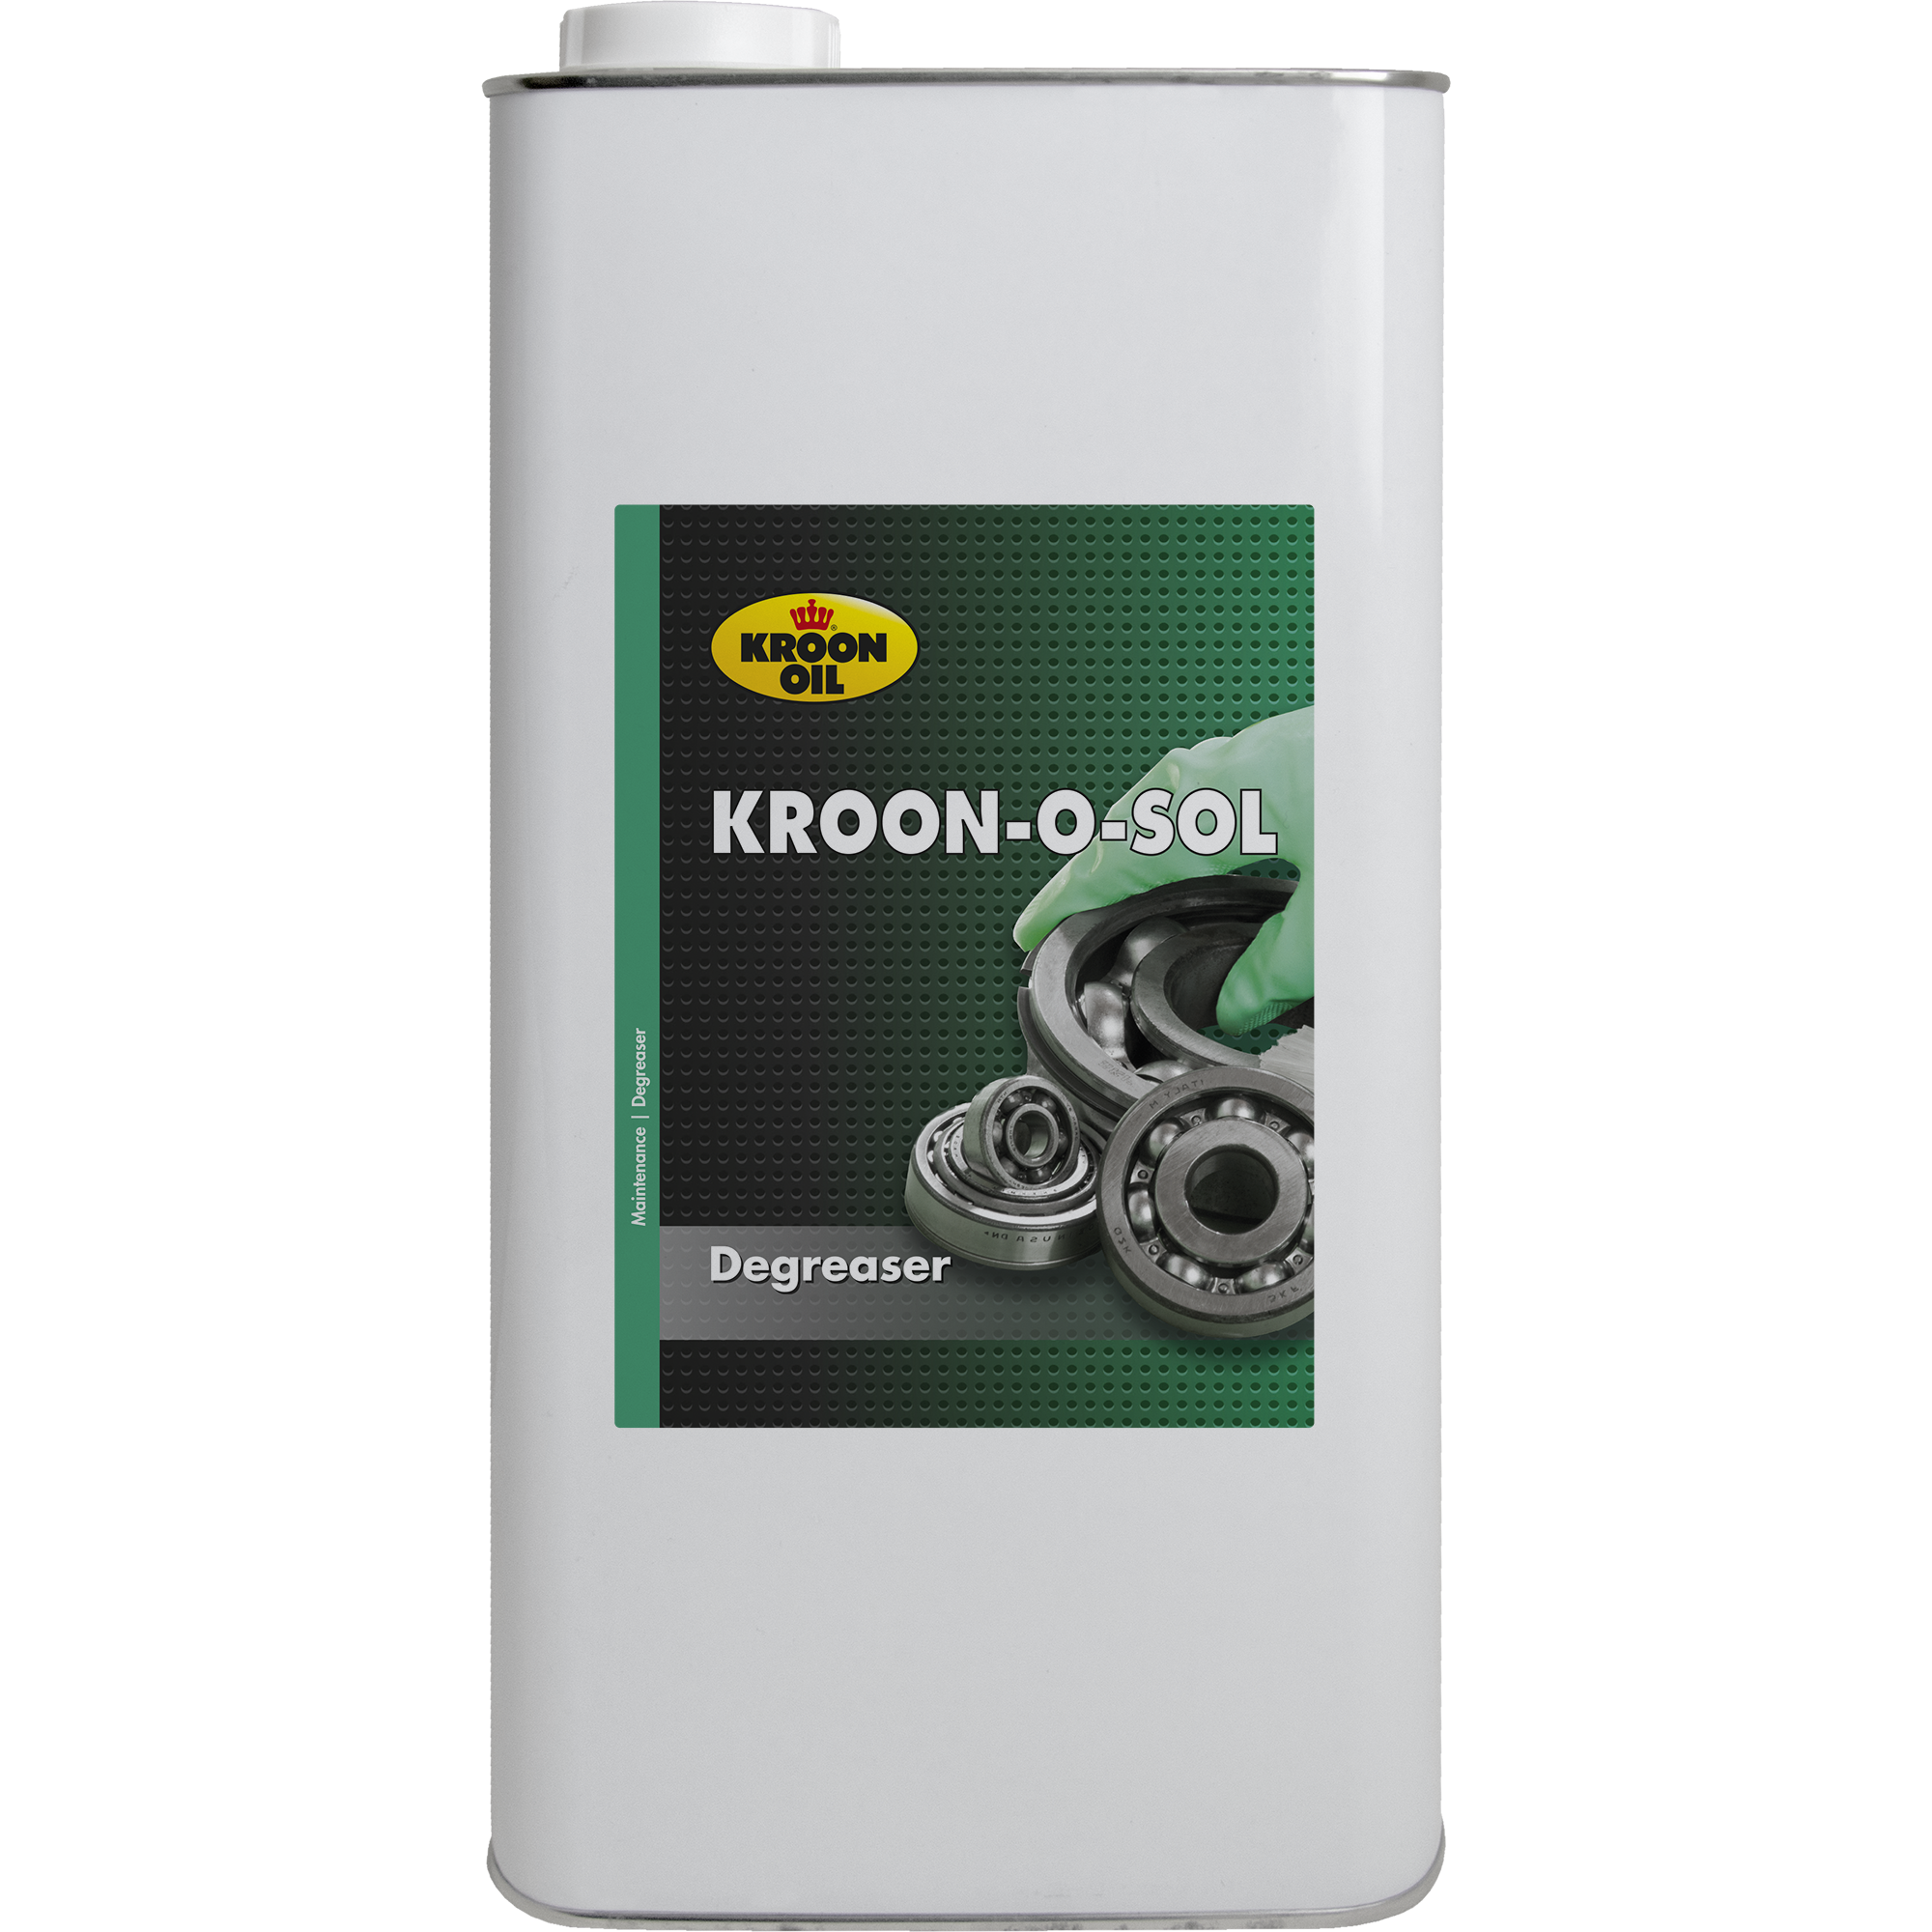 03308-5 Kroon-O-Sol is een minerale emulgeerbare ontvetter, gebaseerd op een goed geraffineerd oplosmiddel.